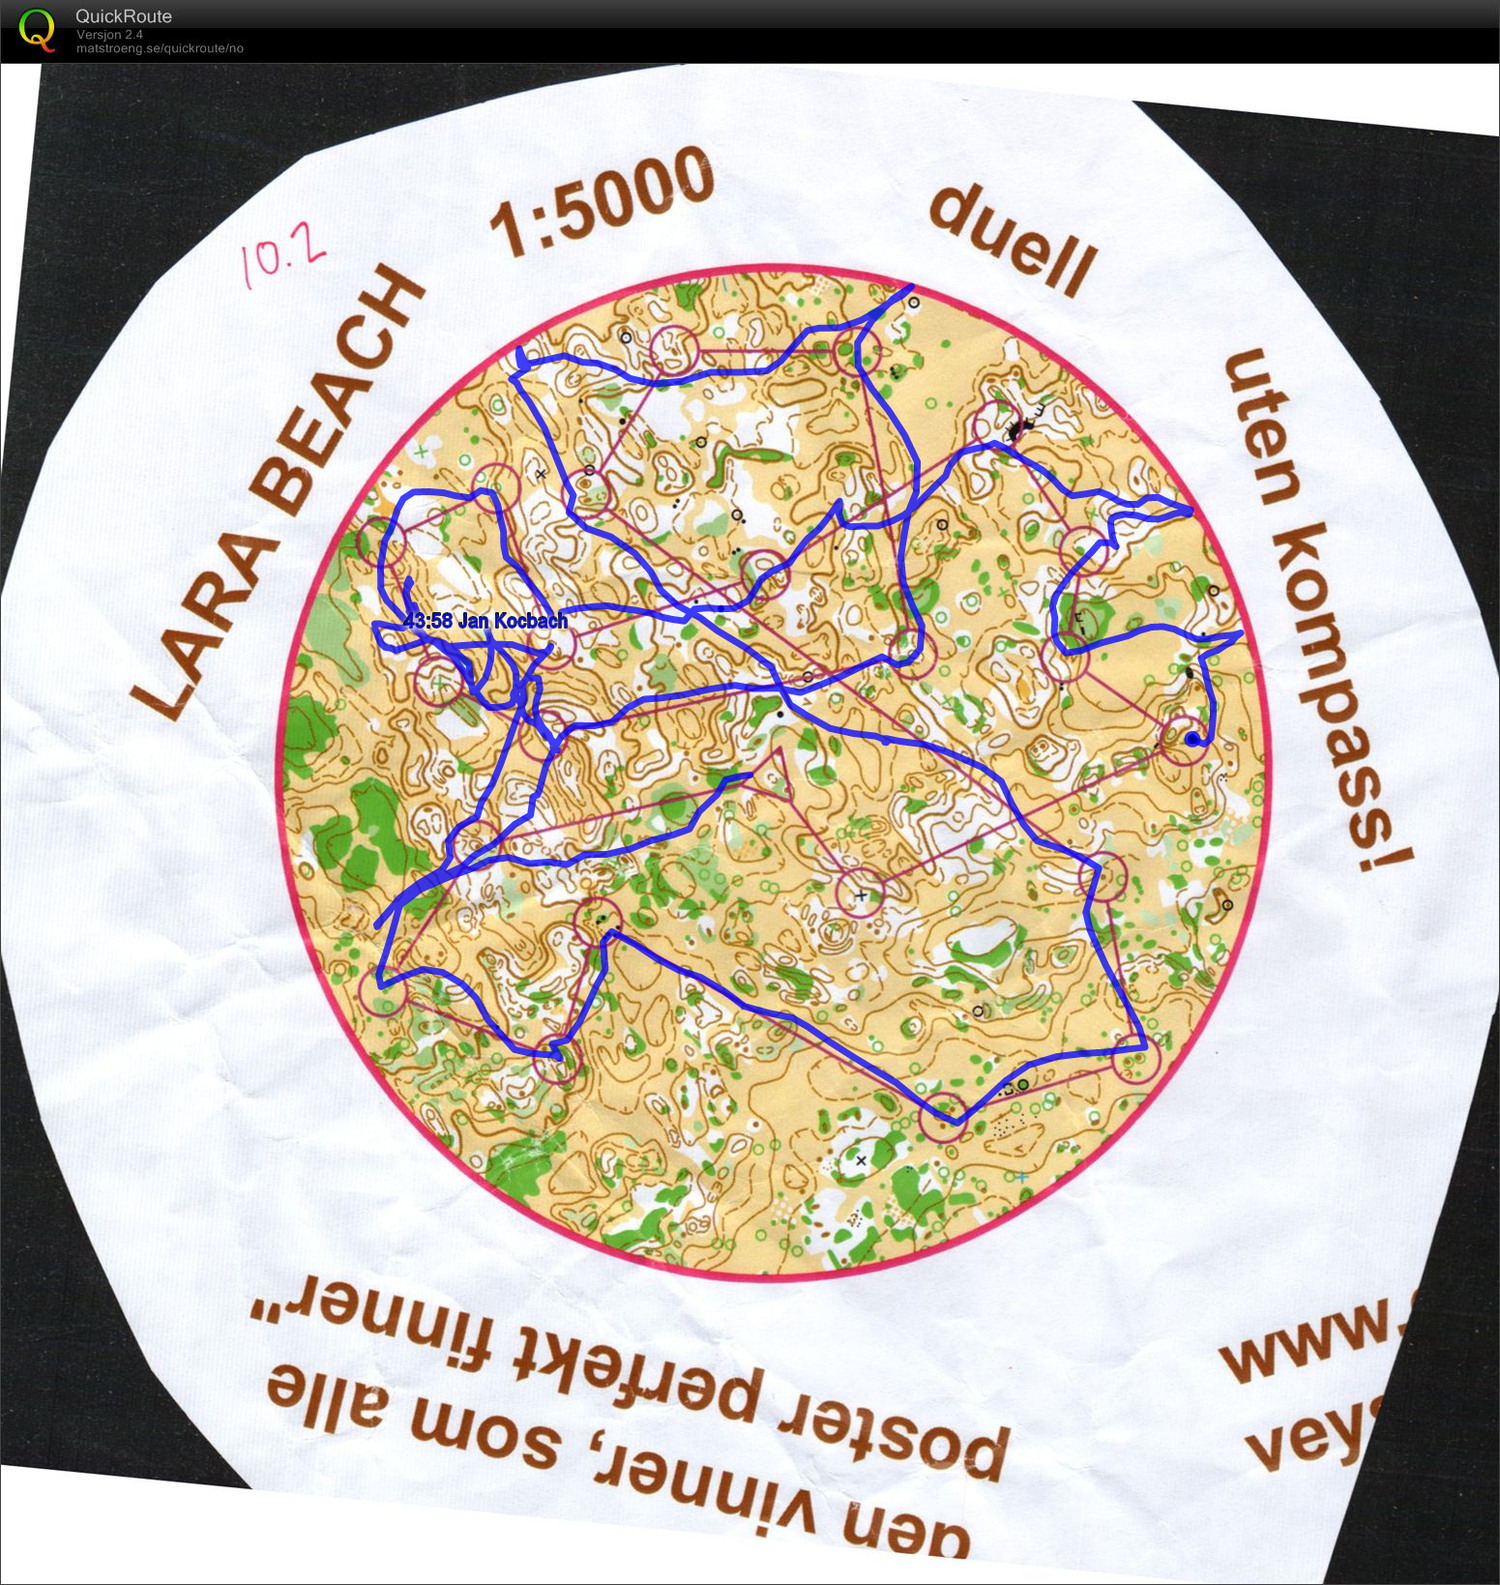 Circular map without compass (26-02-2013)